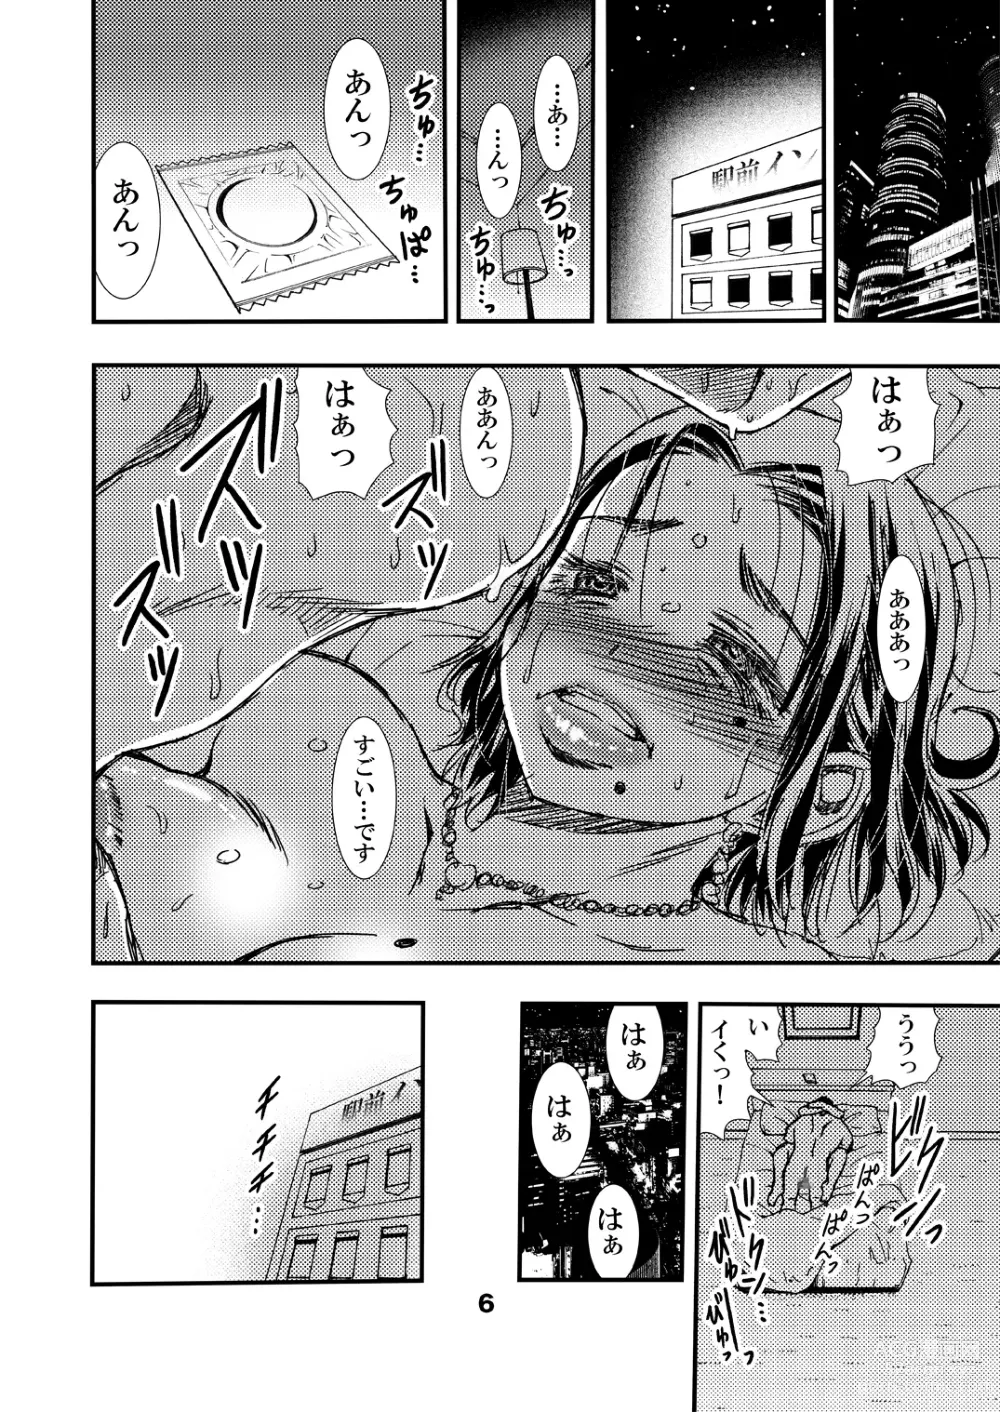 Page 6 of doujinshi Jukunen Tsuma. Tabisaki no Danjo no Joji